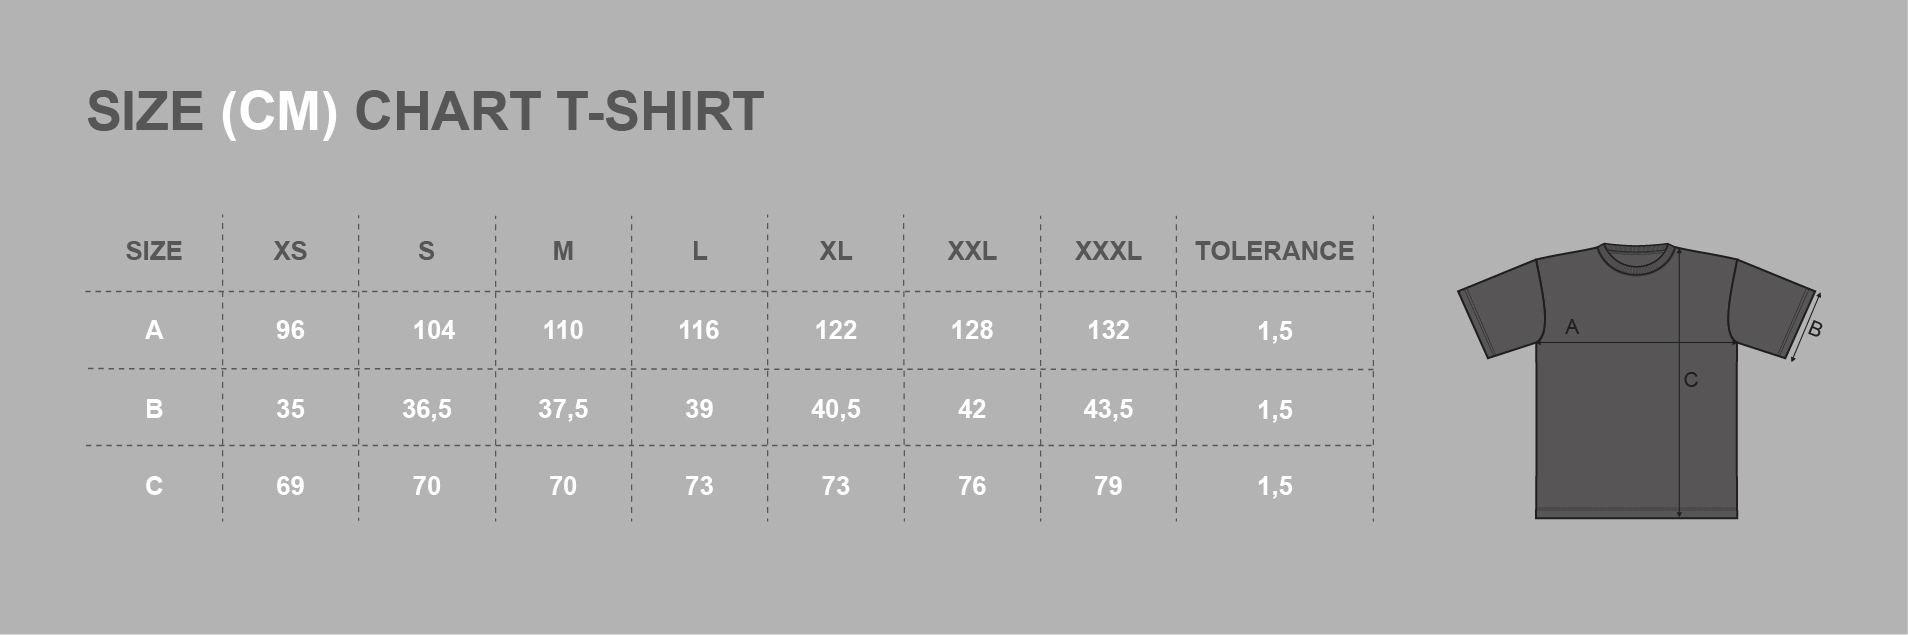 T-shirt "TERMINATOR" Rigid Rules-grey # RigidRules.com - t-shirts, clothes, hoodies, leggins